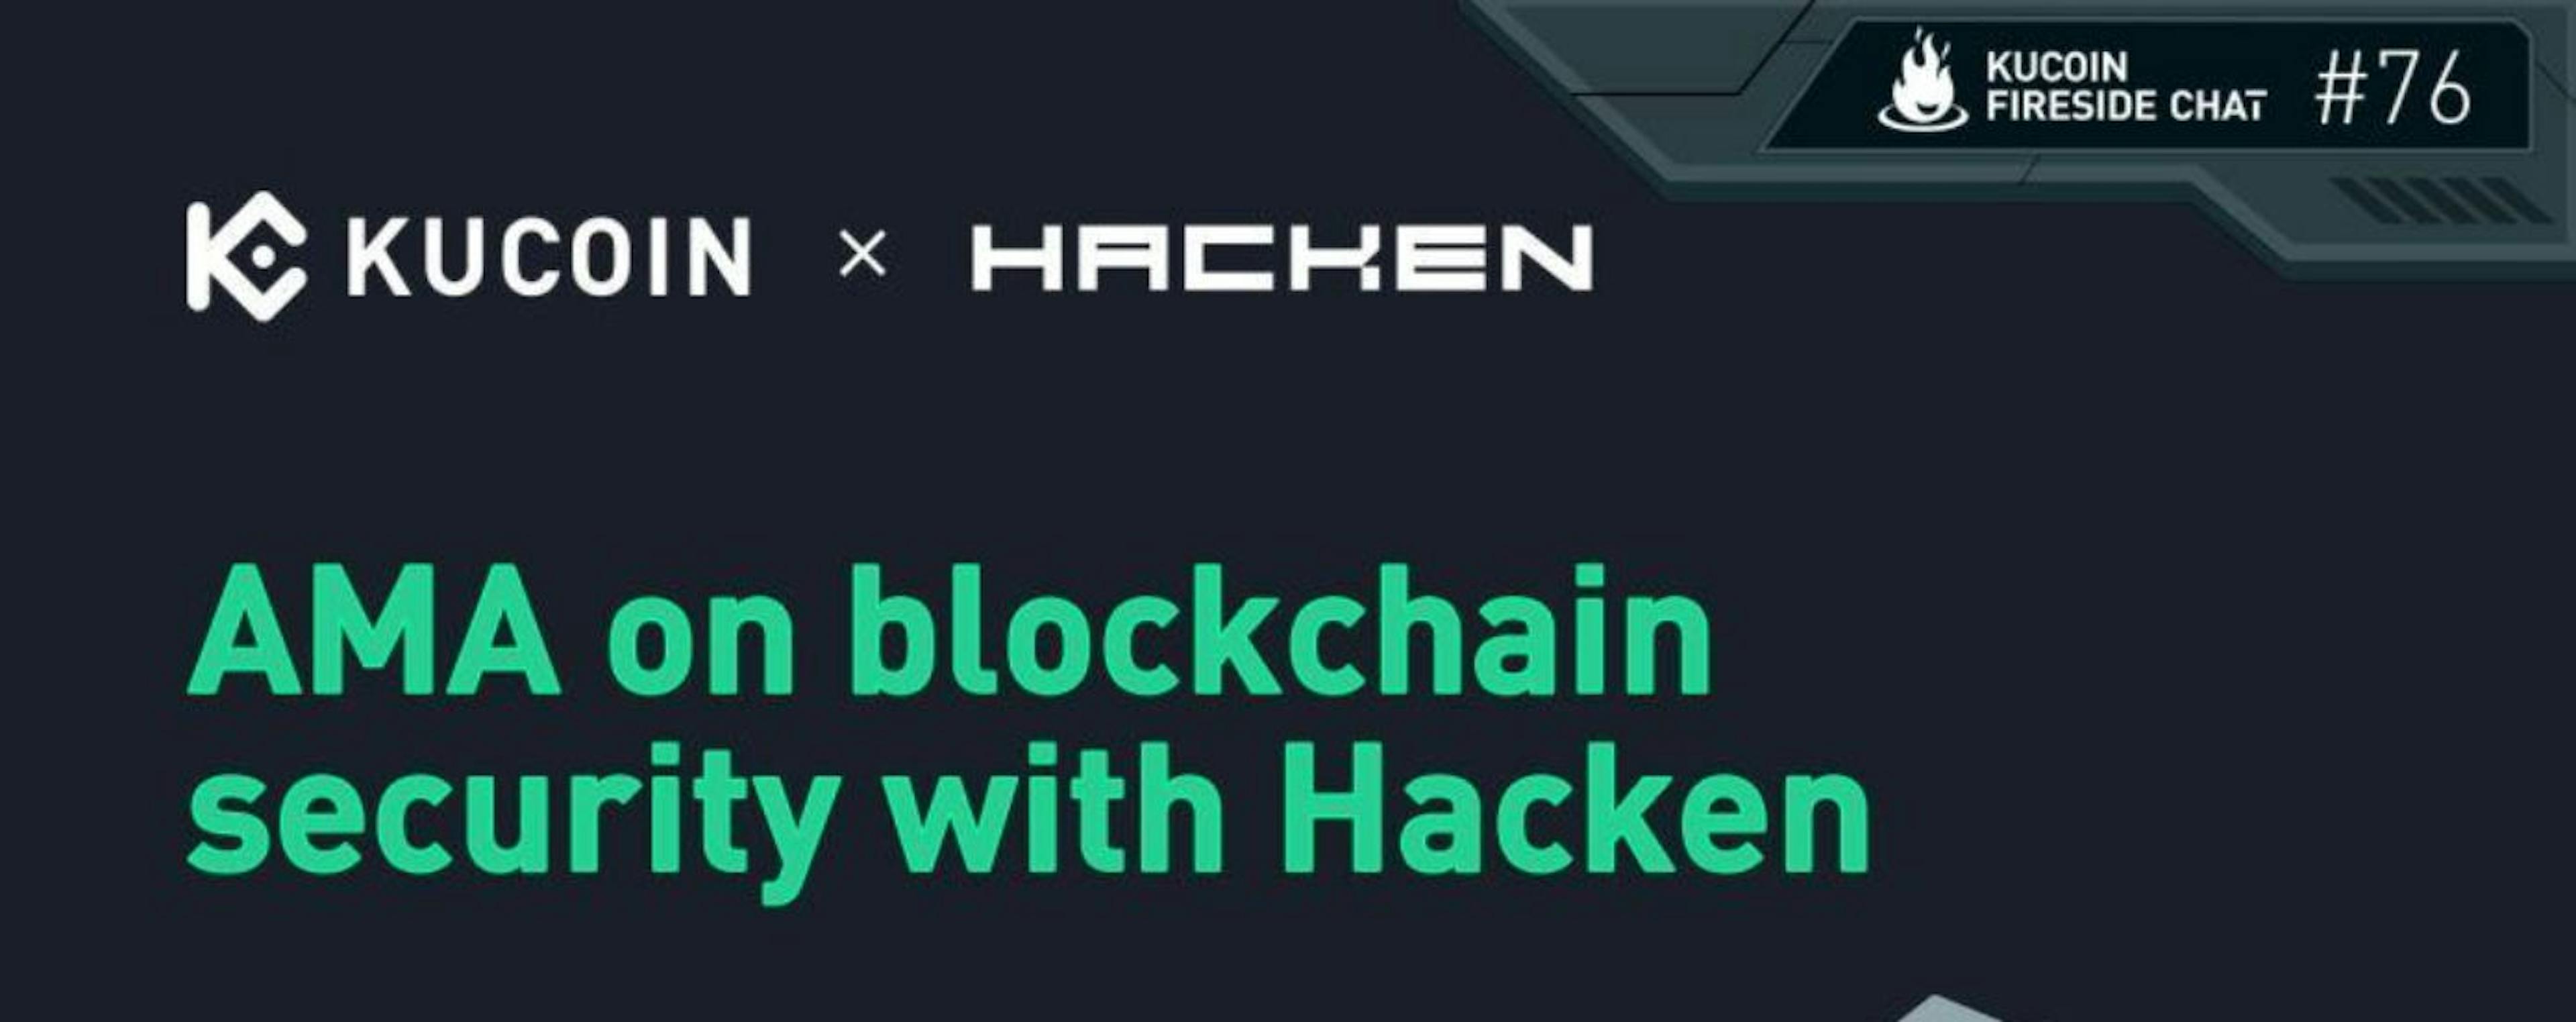 featured image - Seguridad para Blockchain con KuCoin y Hacken